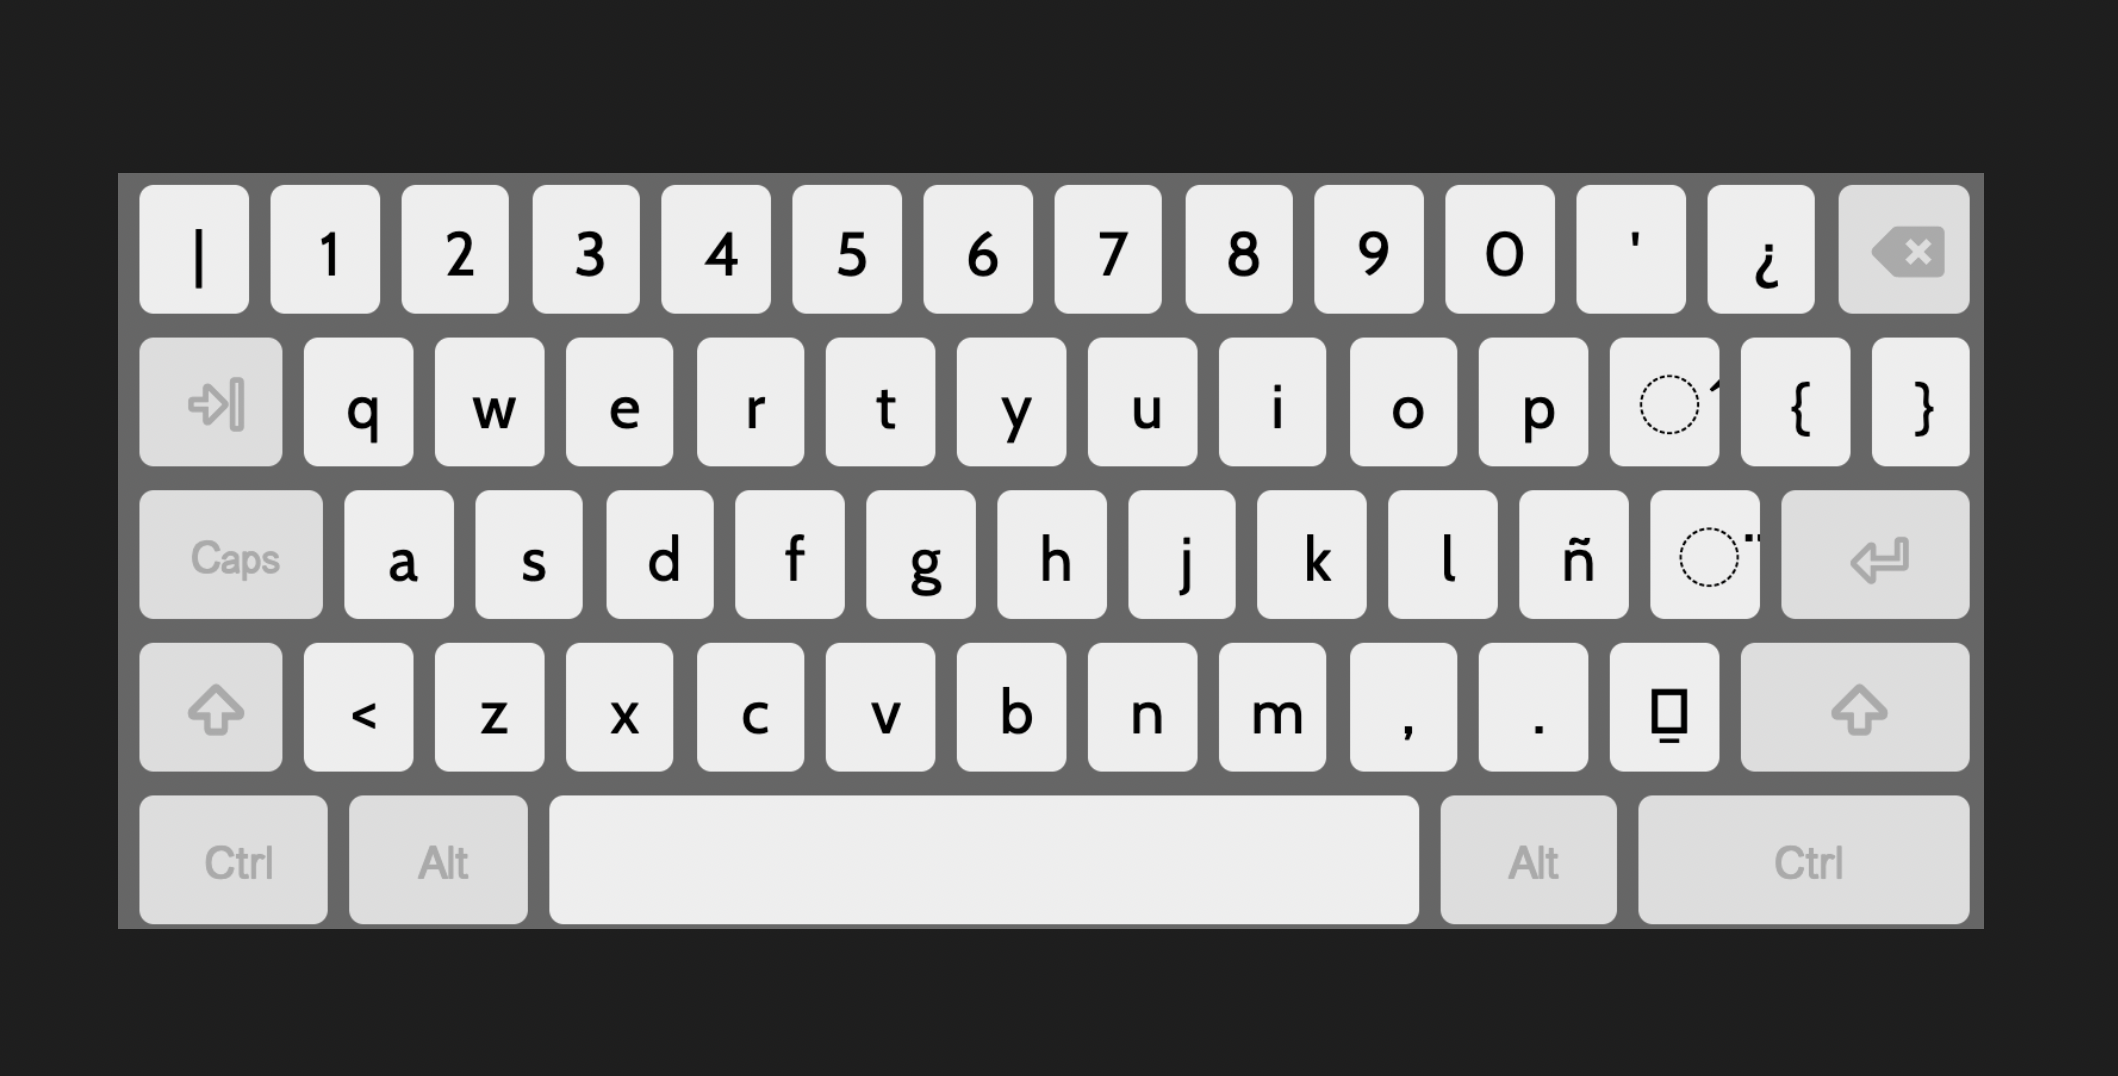 Cabecar keyboard